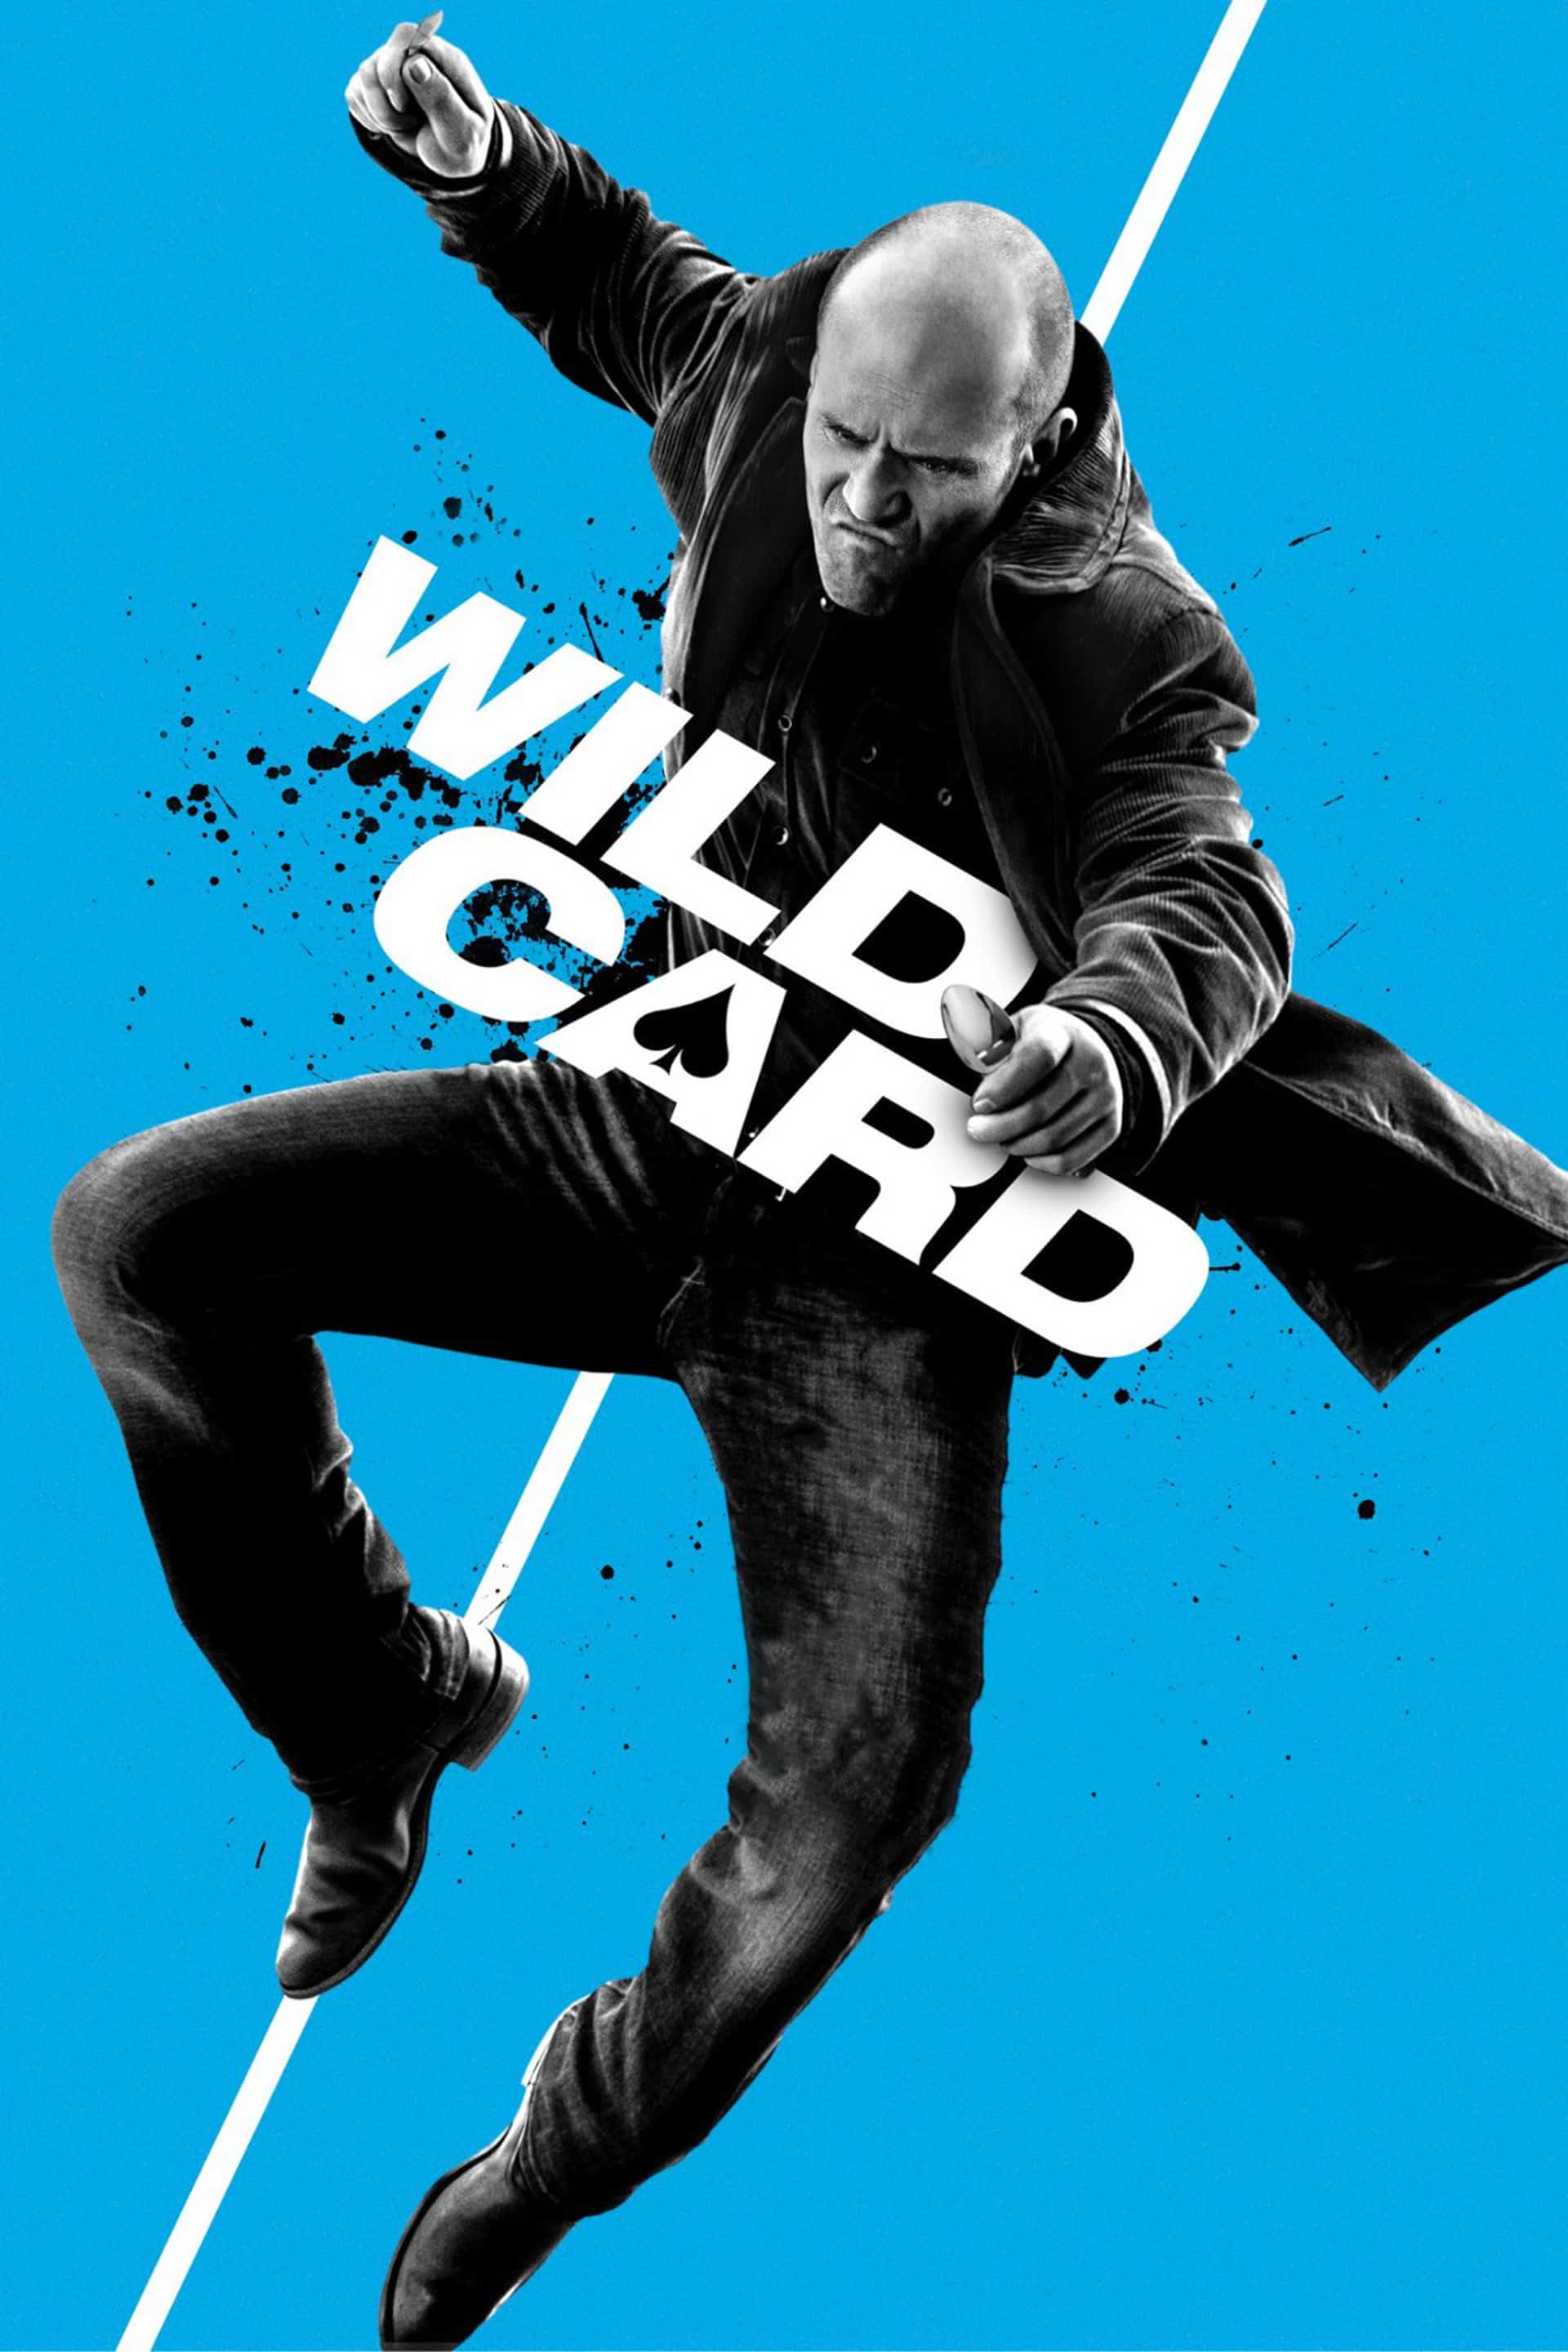 Wild Card, 2015 